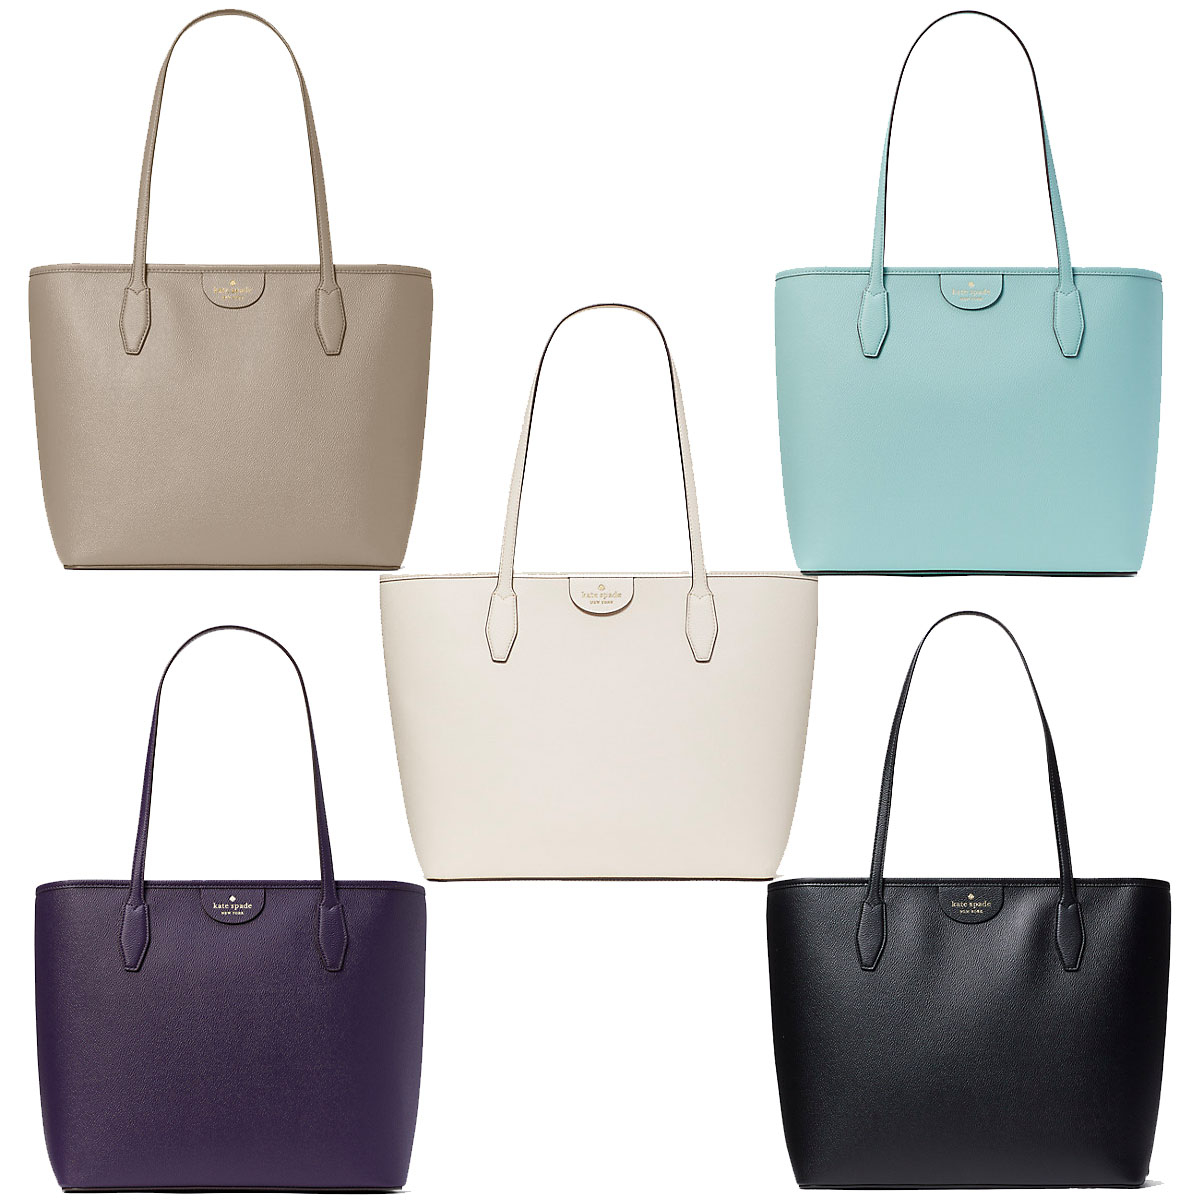 Best Kate Spade sale picks for spring: Handbags, tote bags